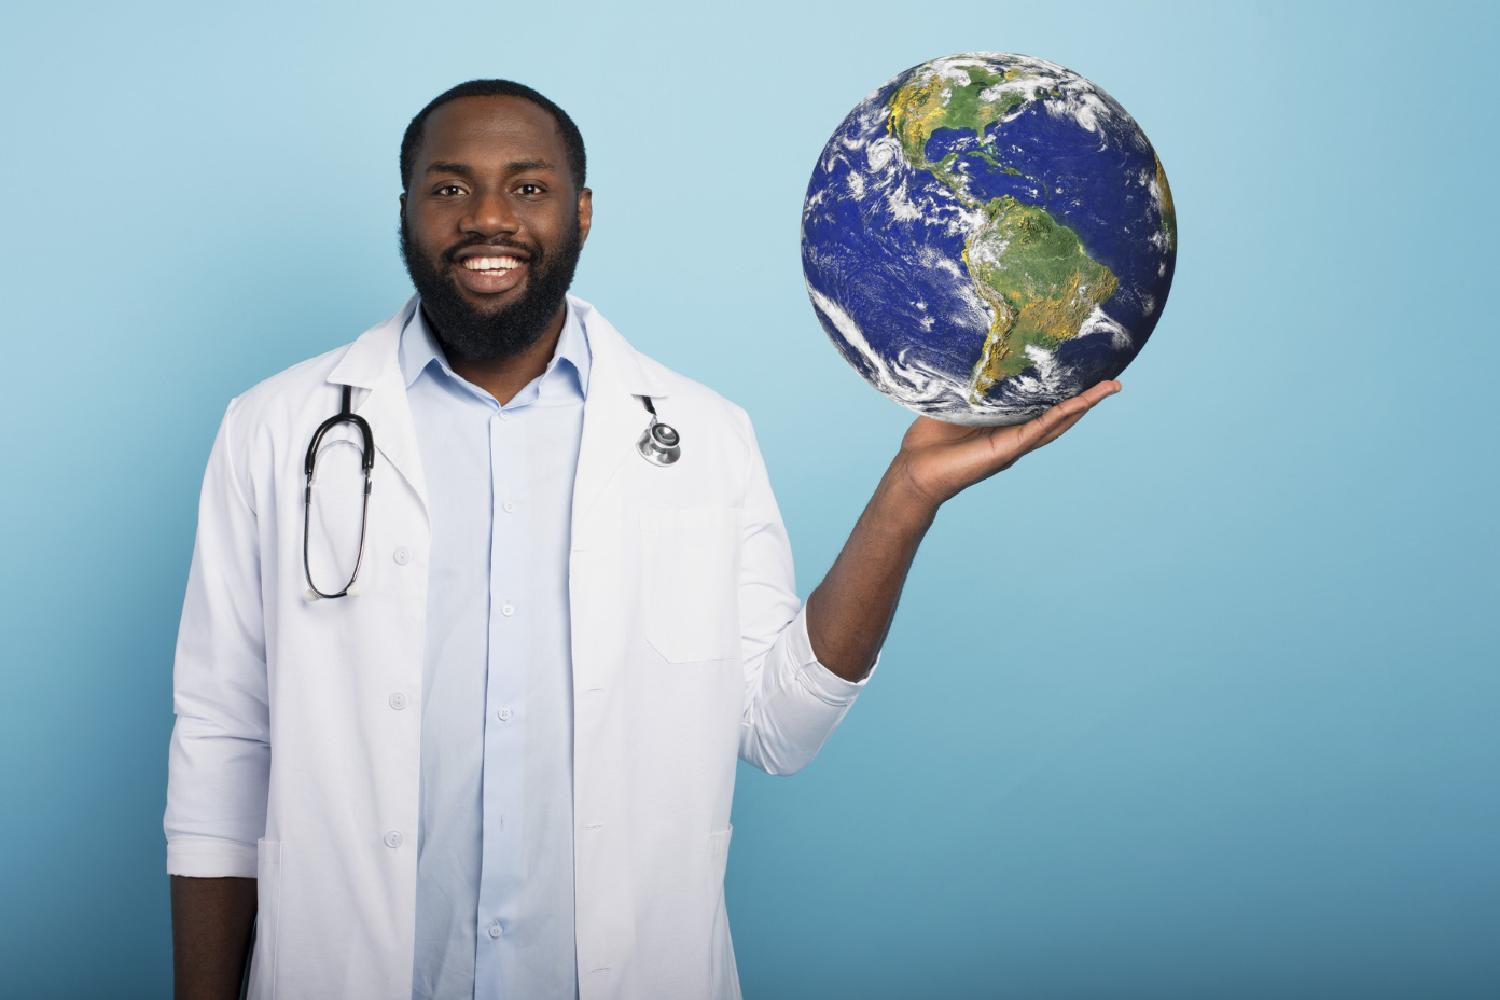 Imagem de um médico com um globo na mão, representando a questão “Diploma de medicina do Brasil vale em quais países?